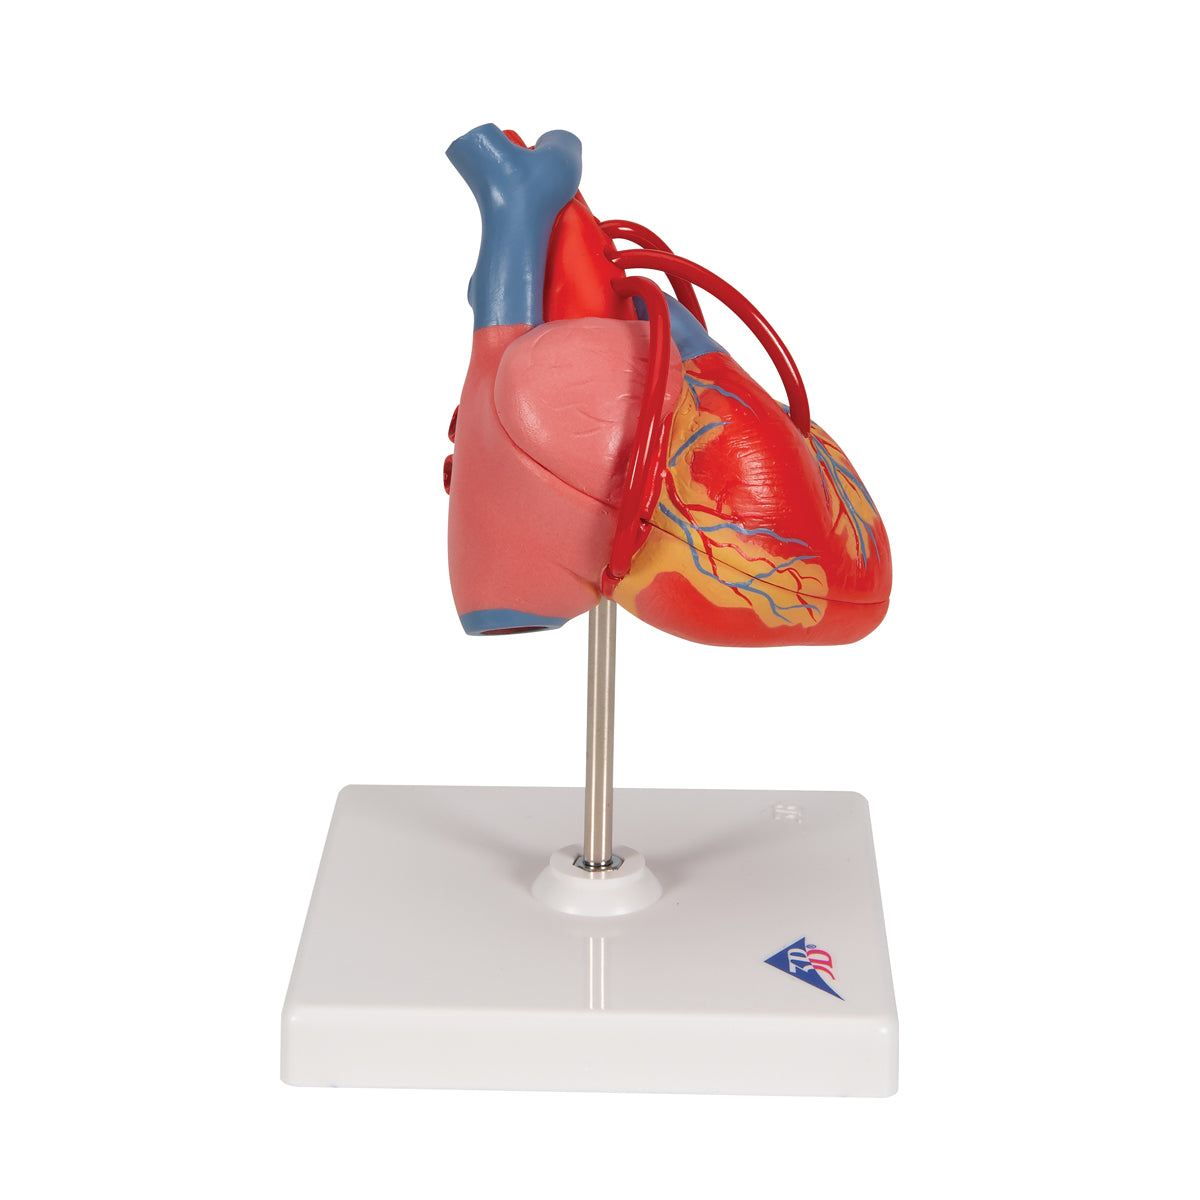 Hjertemodel der viser resultatet efter en bypass-operation